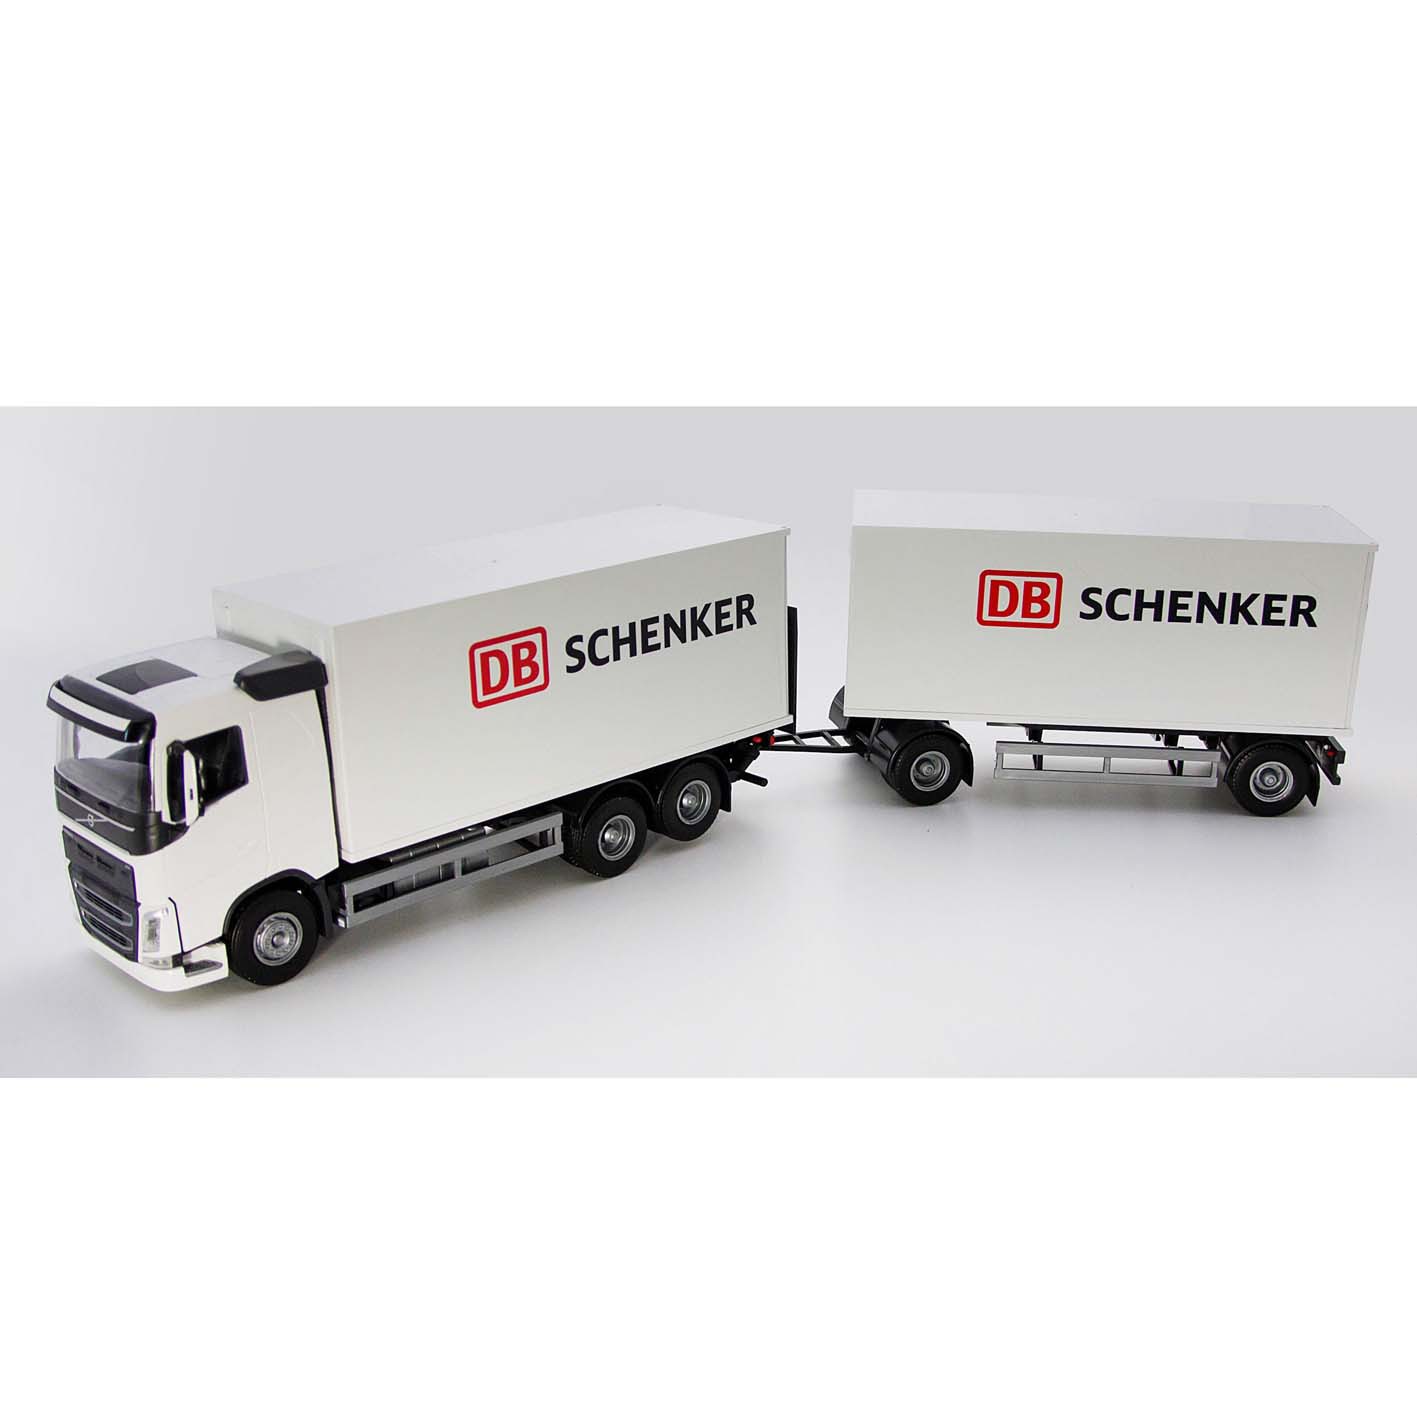 Toy trucks emek toy car distrib. truck & trailer